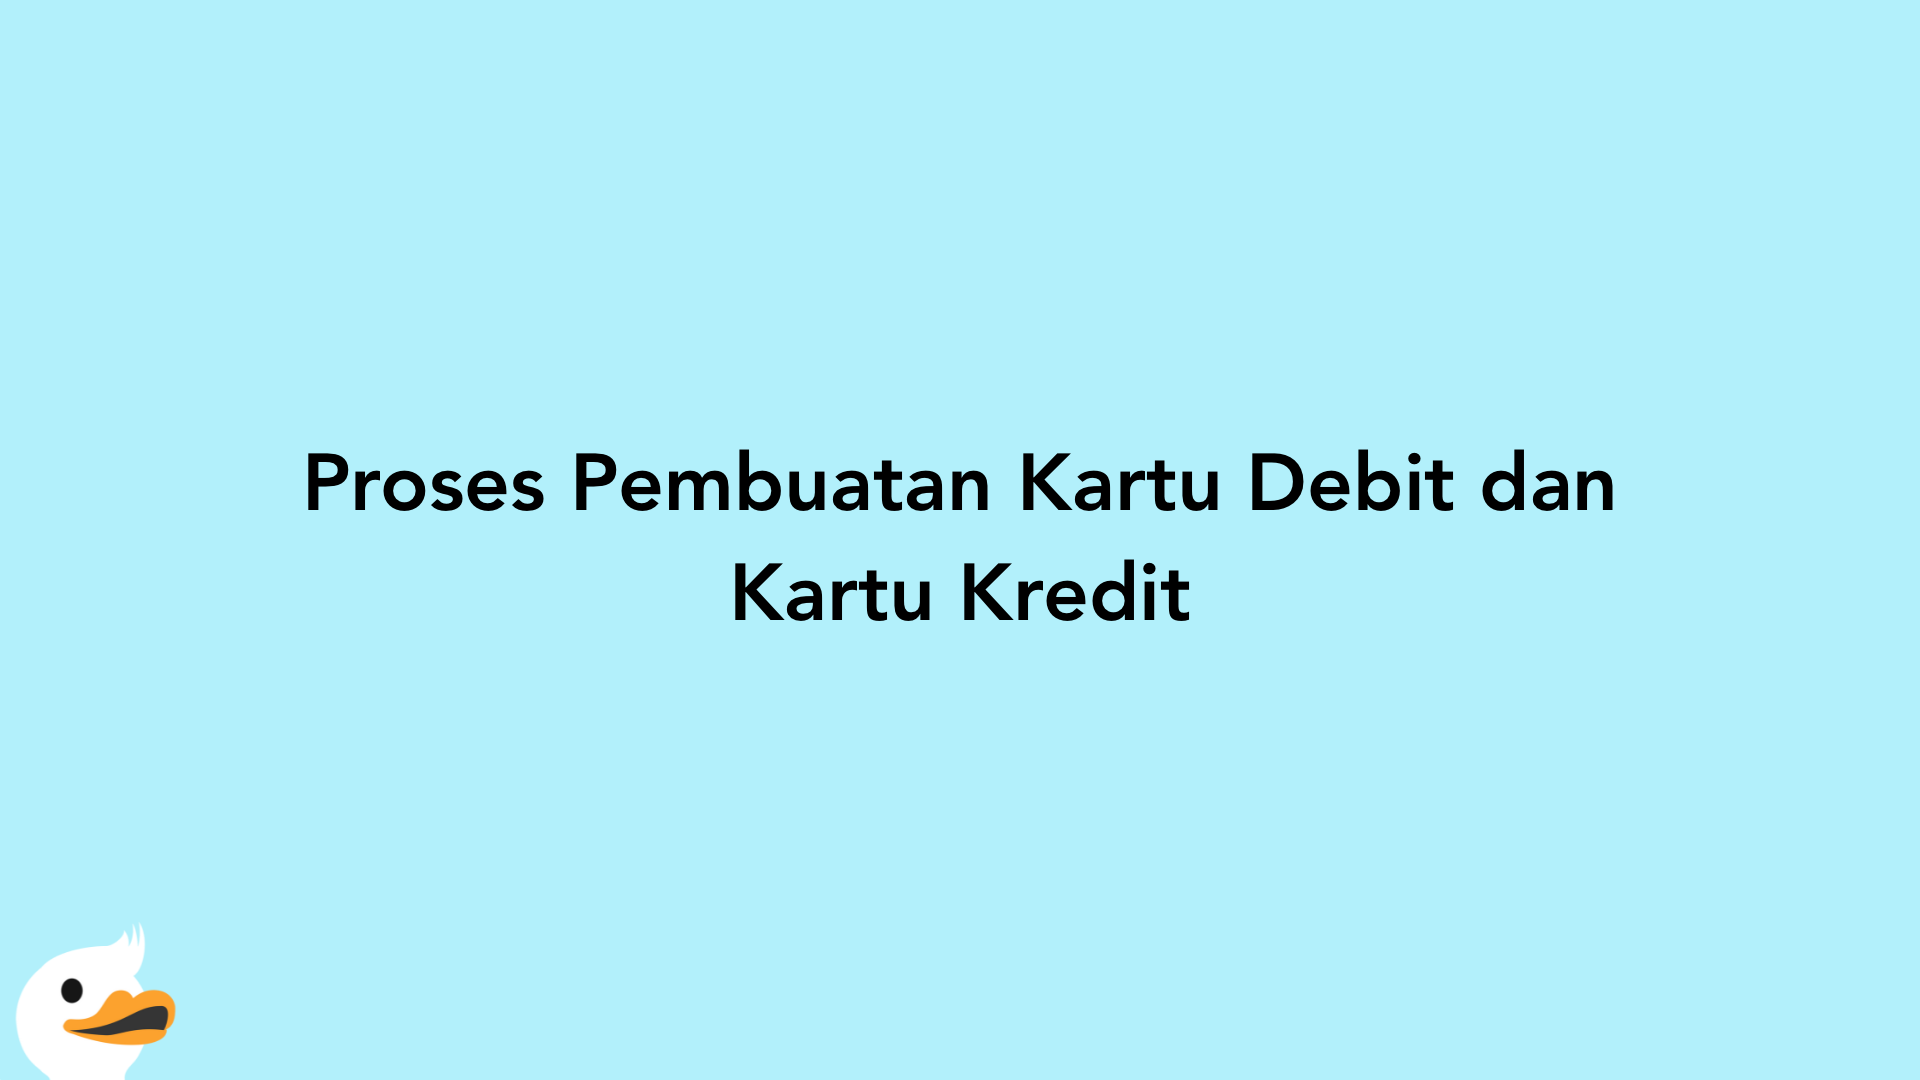 Proses Pembuatan Kartu Debit dan Kartu Kredit